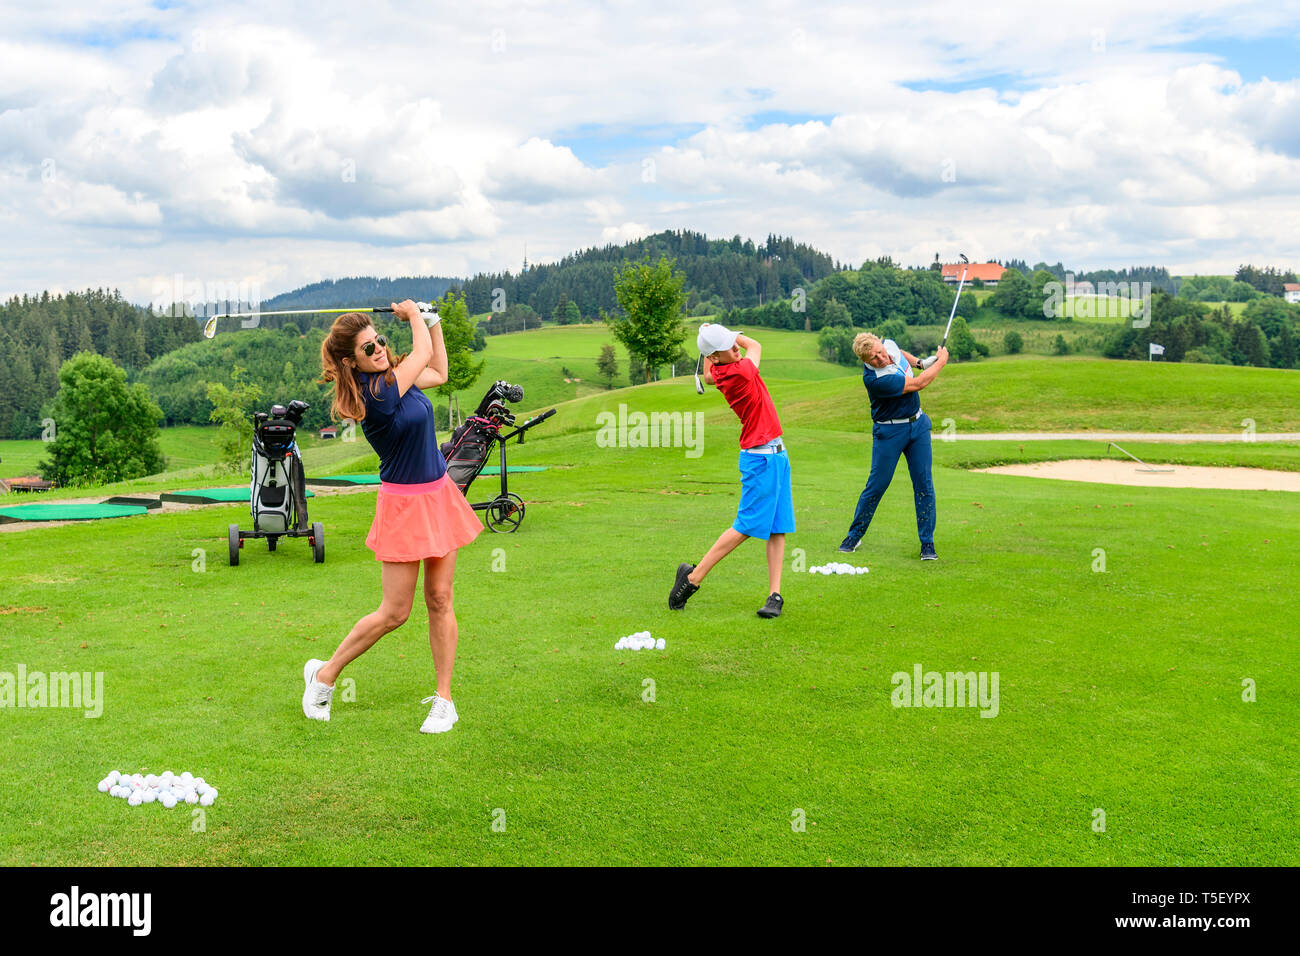 Los jugadores de golf practicar en drivingrange Foto de stock